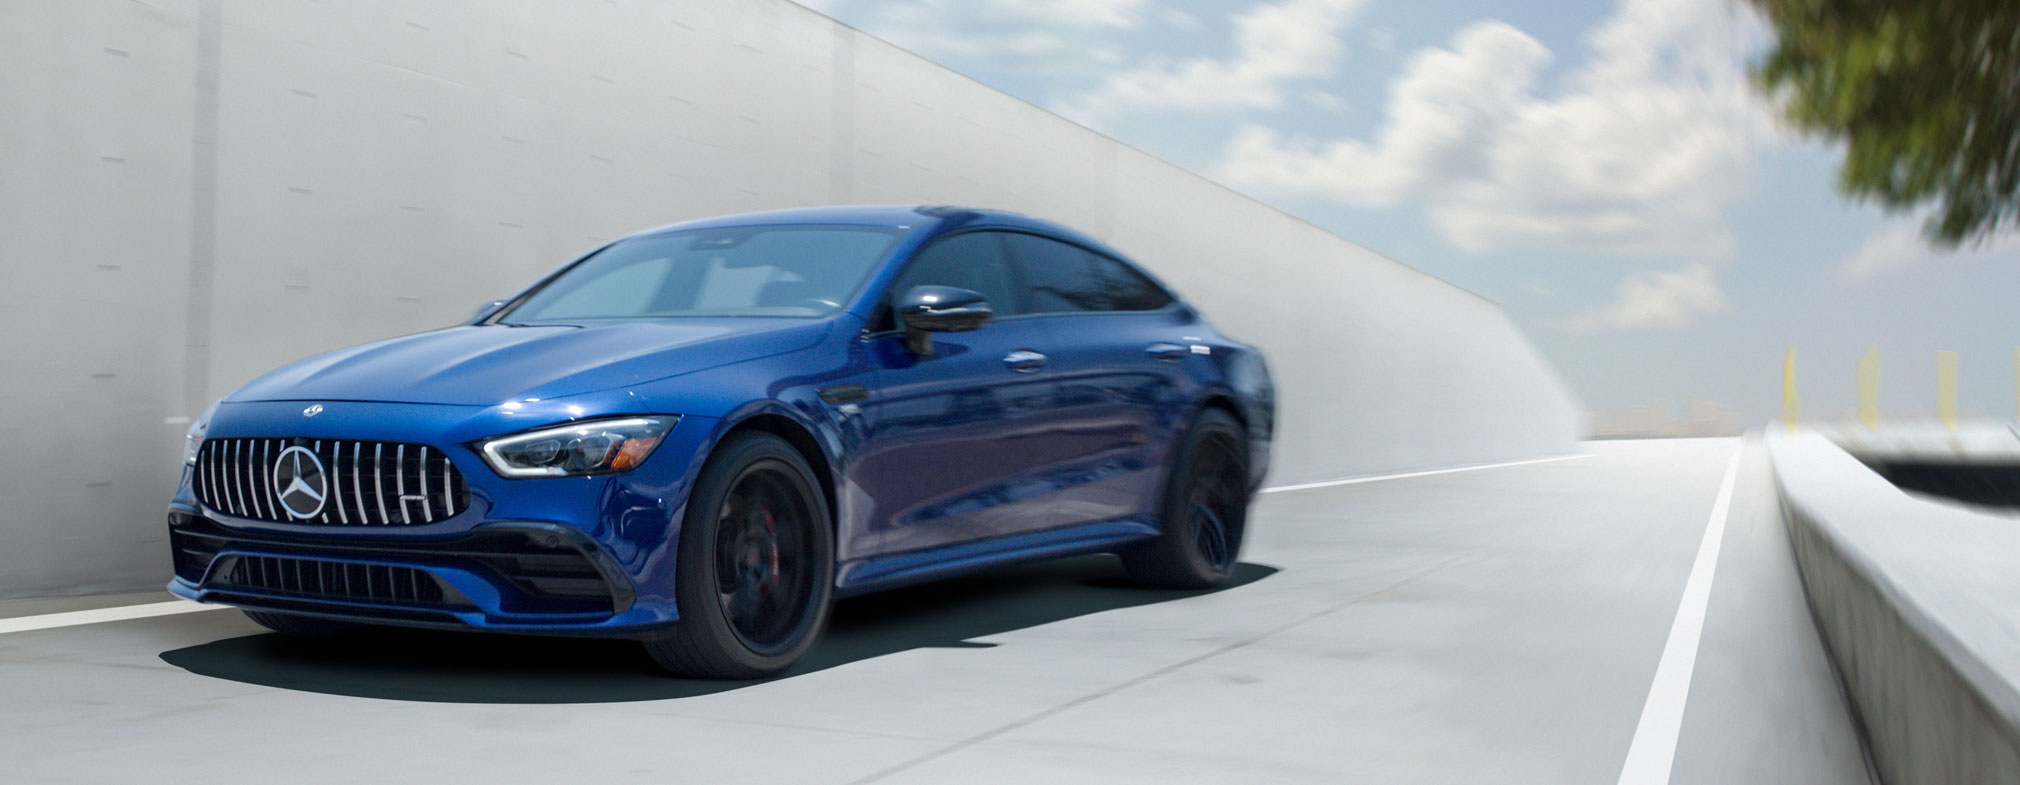 La película de protección de pintura Reaction de SunTek protege un Mercedes azul contra el desgaste normal.